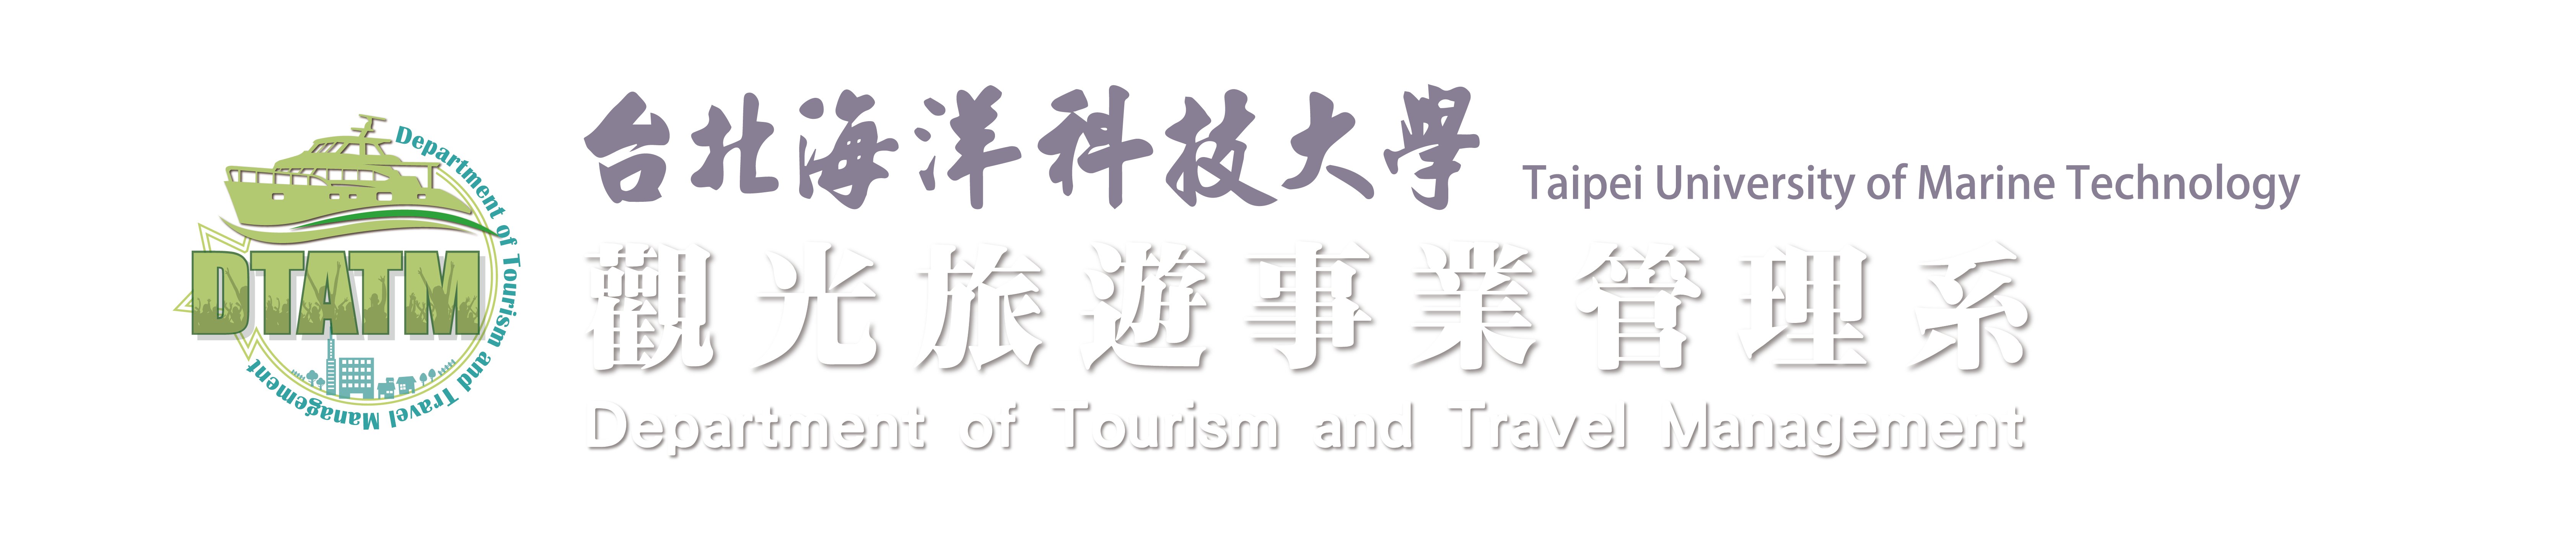 觀光旅遊事業管理系